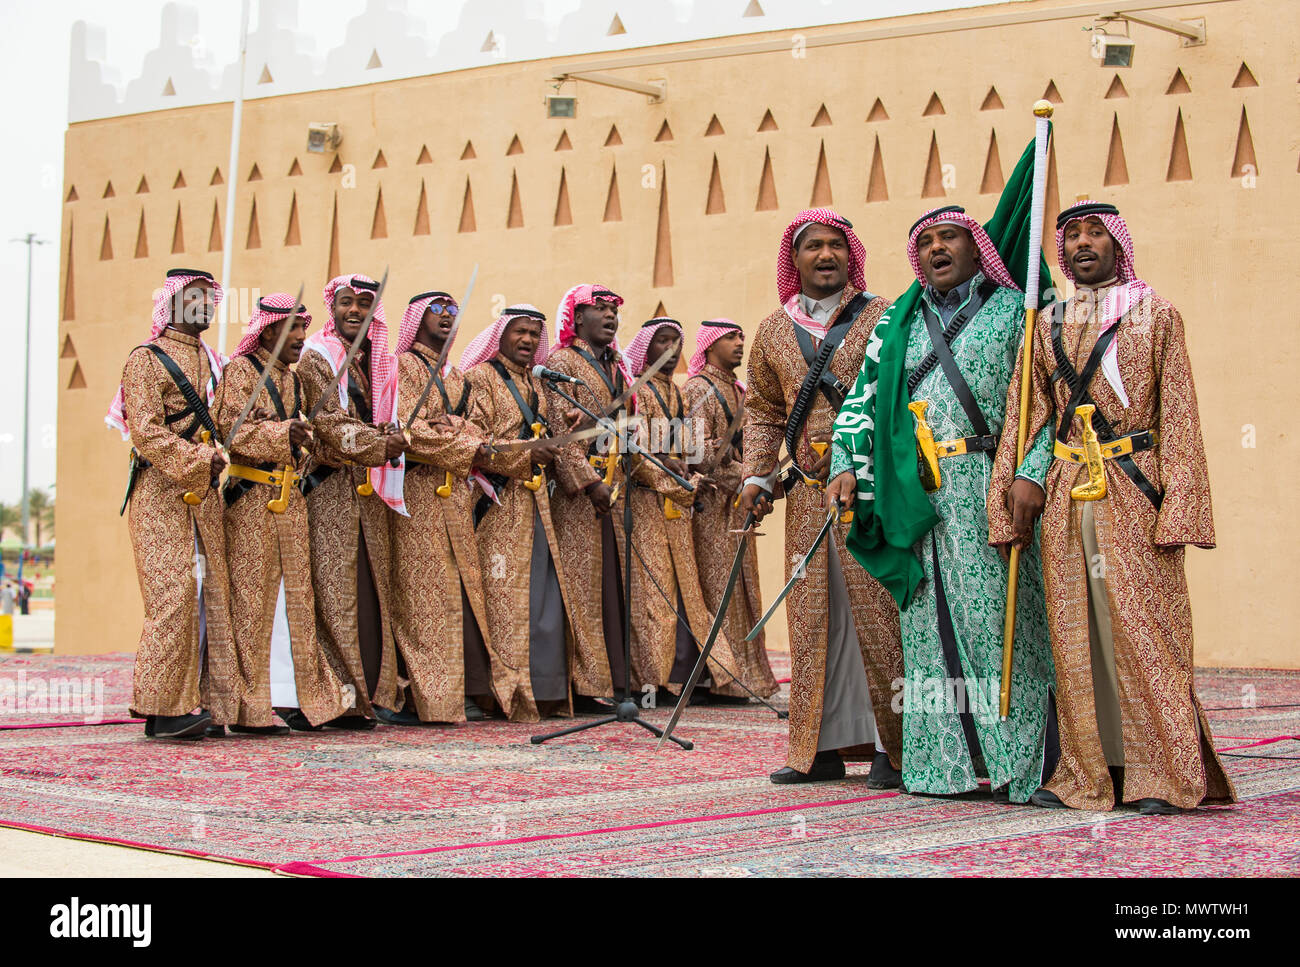 Colourful traditionally dressed men, Al Janadriyah Festival, Riyadh, Saudi Arabia, Middle East Stock Photo